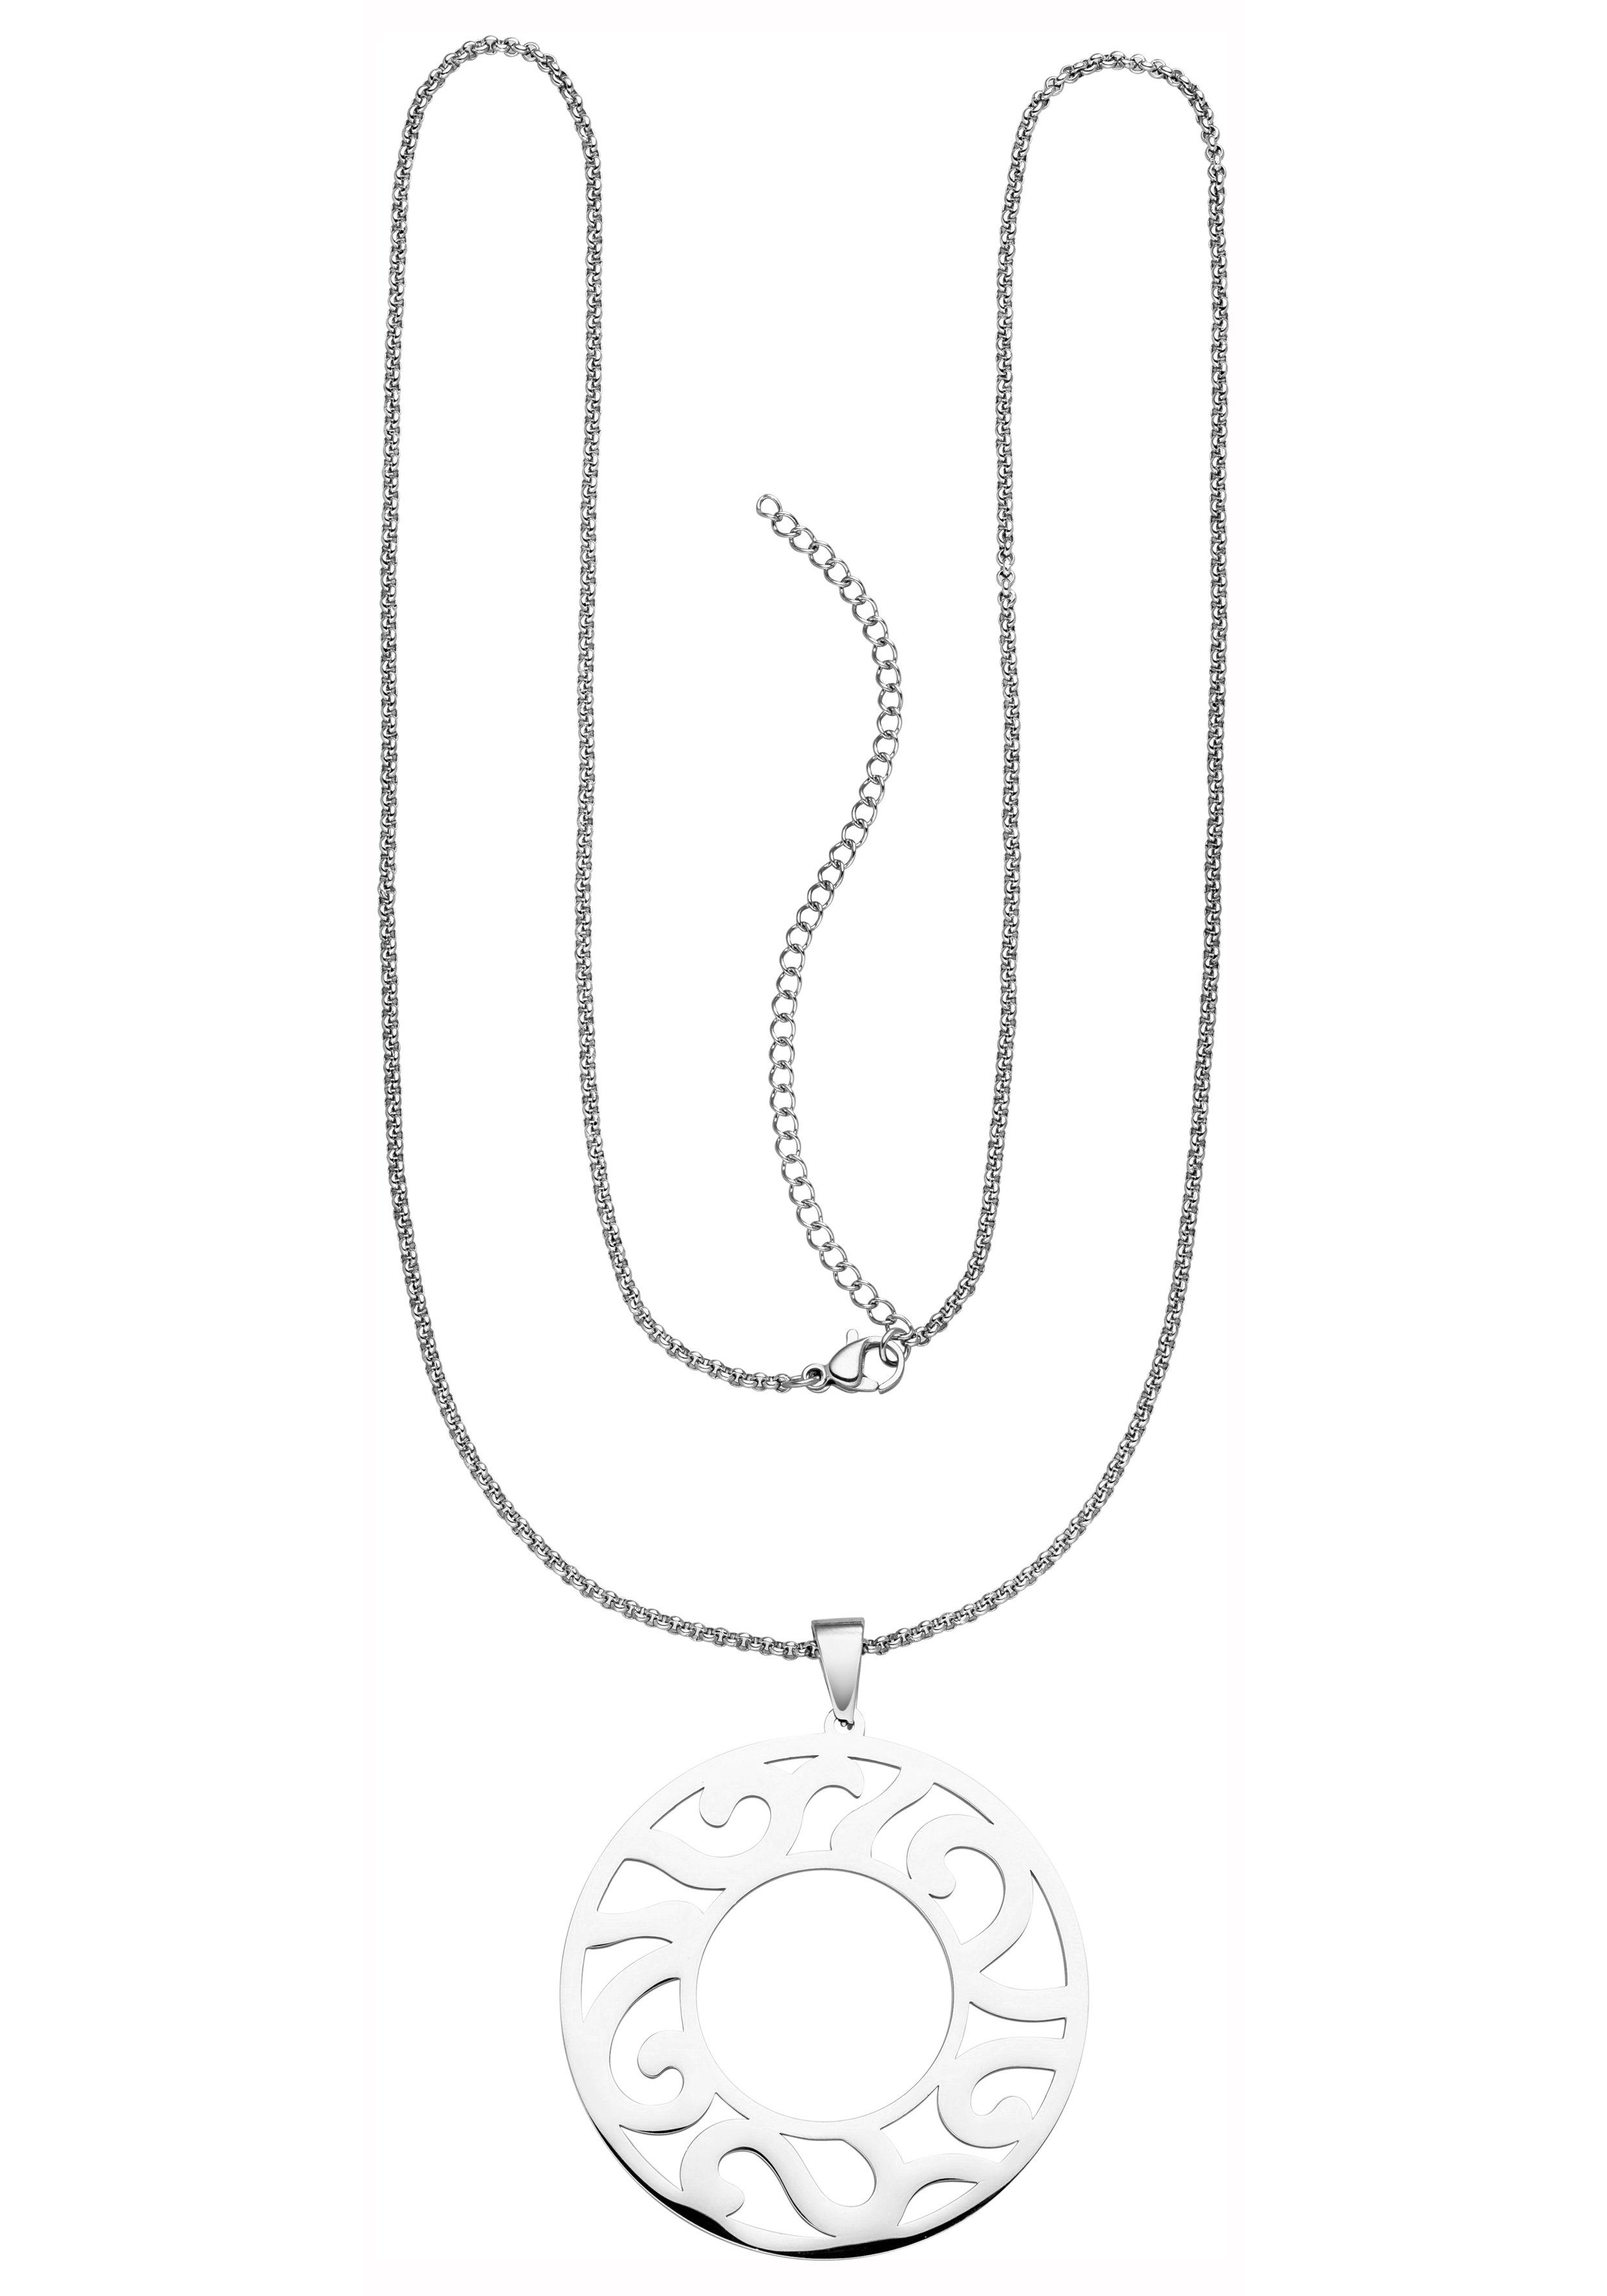 Edelstahl Halskette mit Ringen Erbskette mit Karabinerverschluss Schmuck Damen 